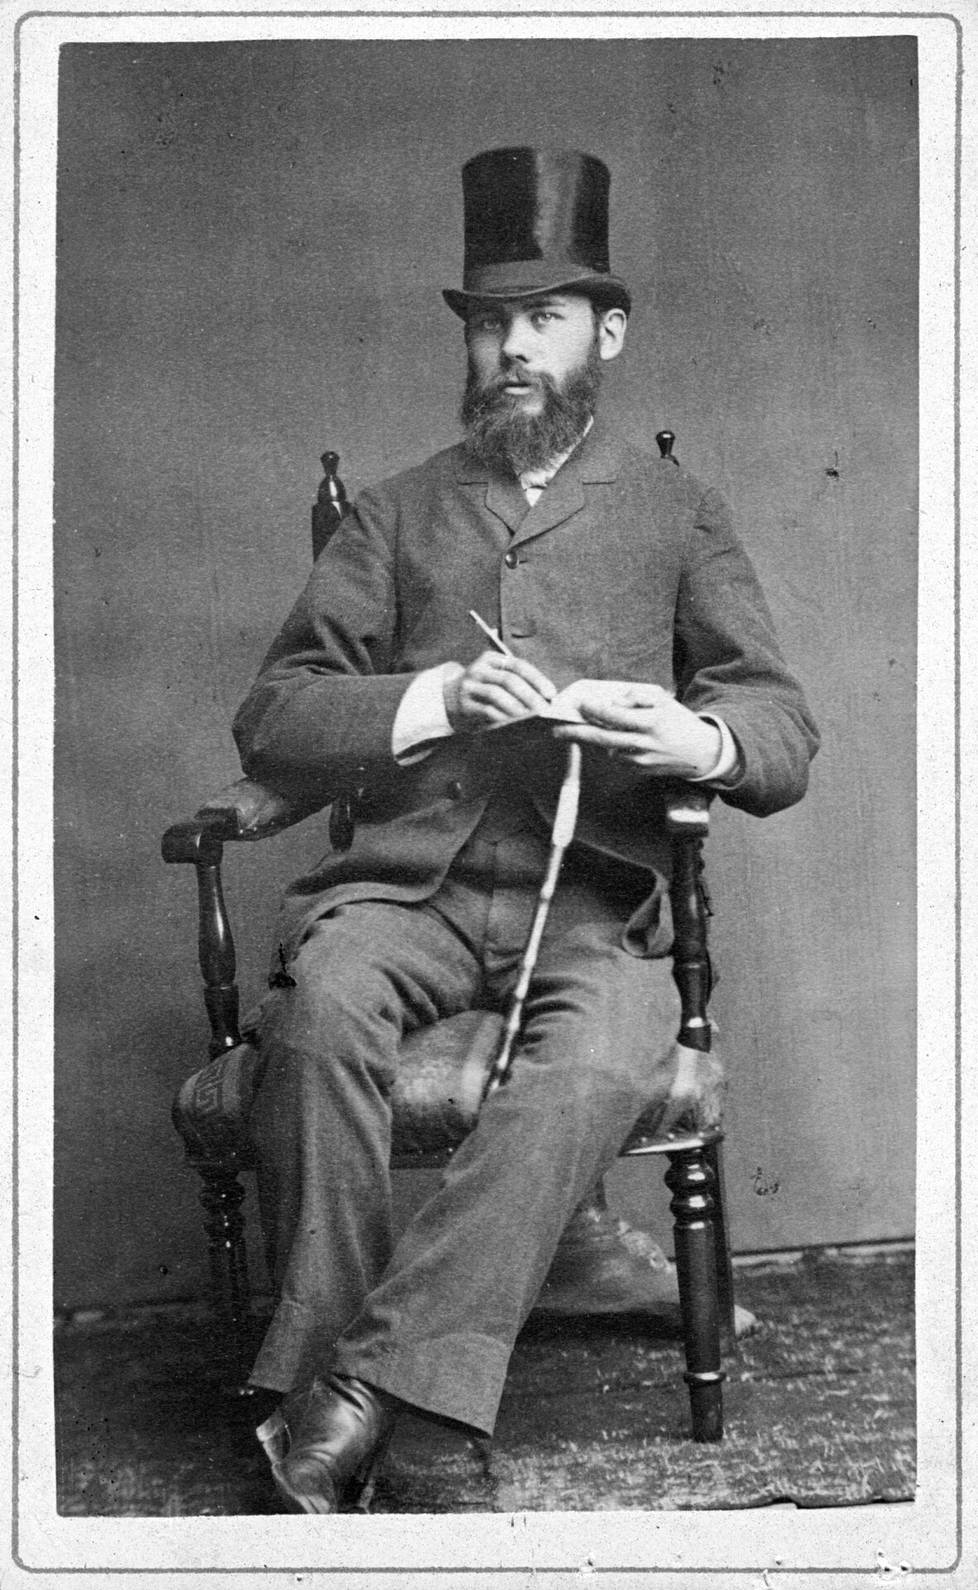 Juho Holmstén oli Porissa syntynyt kelloseppä ja teknisten kojeiden keräilijä. Hän toi Pariisin sähkönäyttelystä Suomeen ensimmäisen Edisonin hehkulampun. Holmstén muutti Tampereelle vuonna 1882. Seuraavan vuosisadan alussa hän muutti nimensä Holmstén-Heiniöksi.